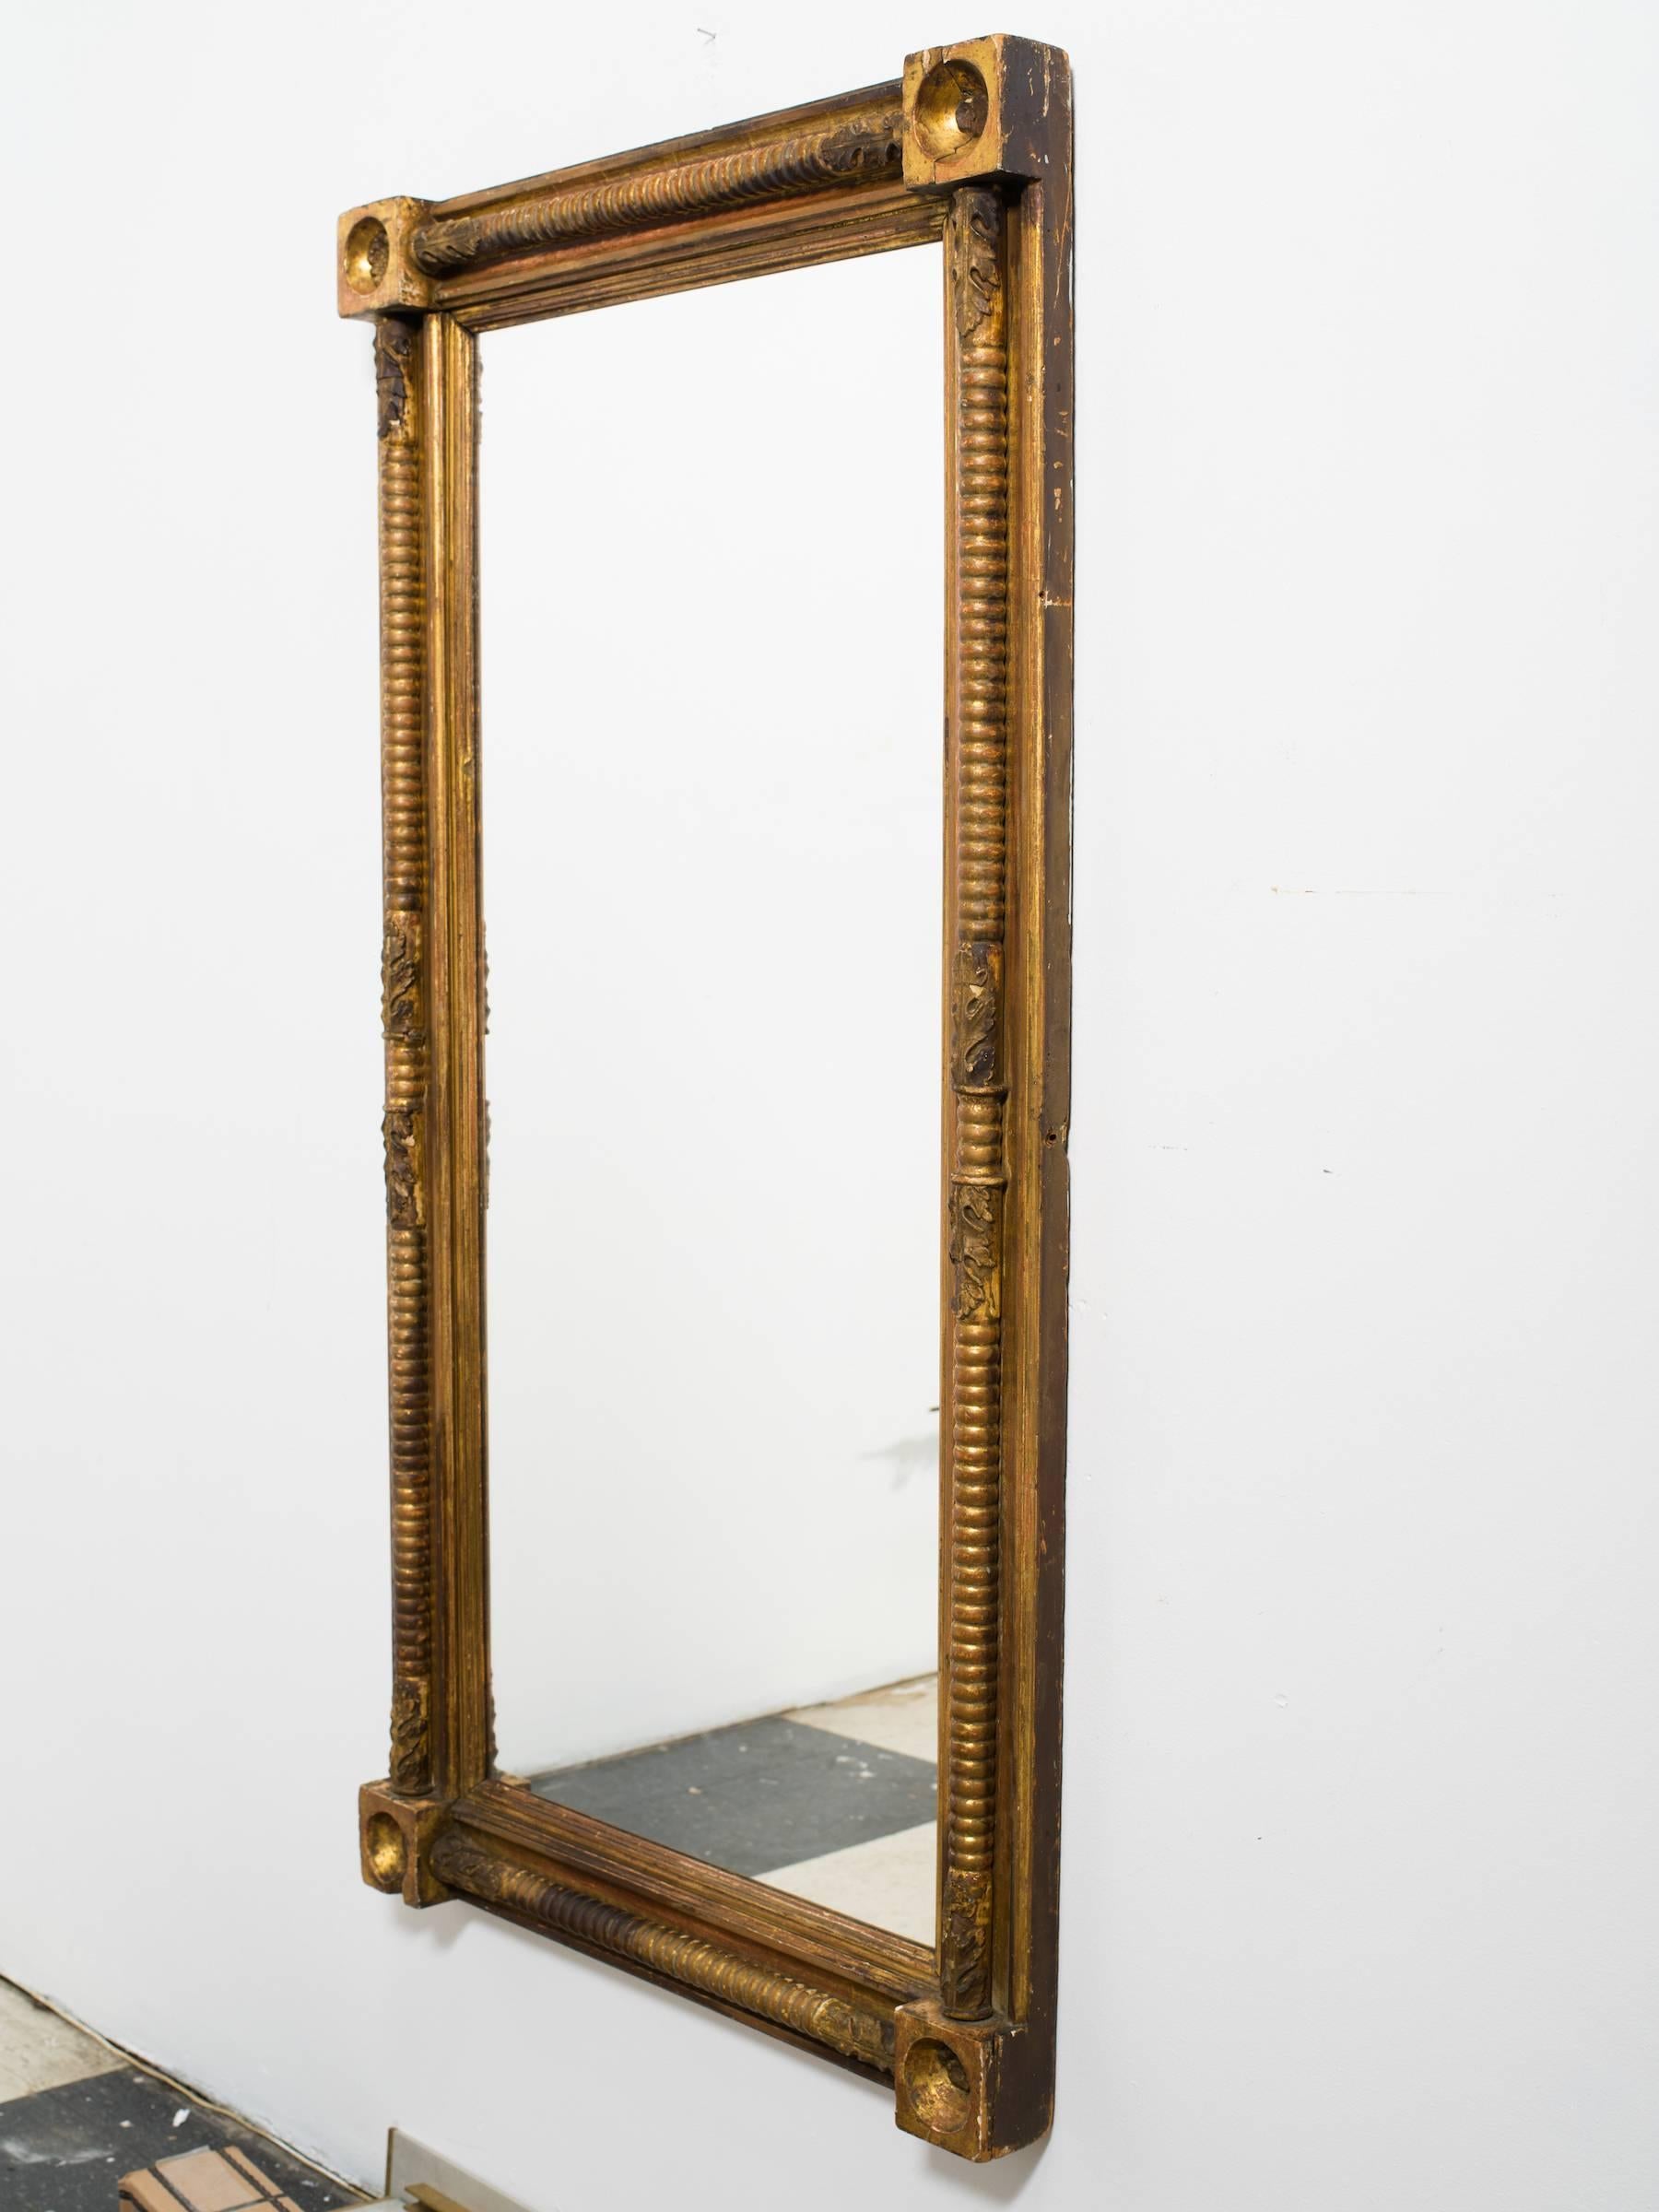 miroir en bois doré anglais des années 1820. Trois fleurons manquent dans les coins.